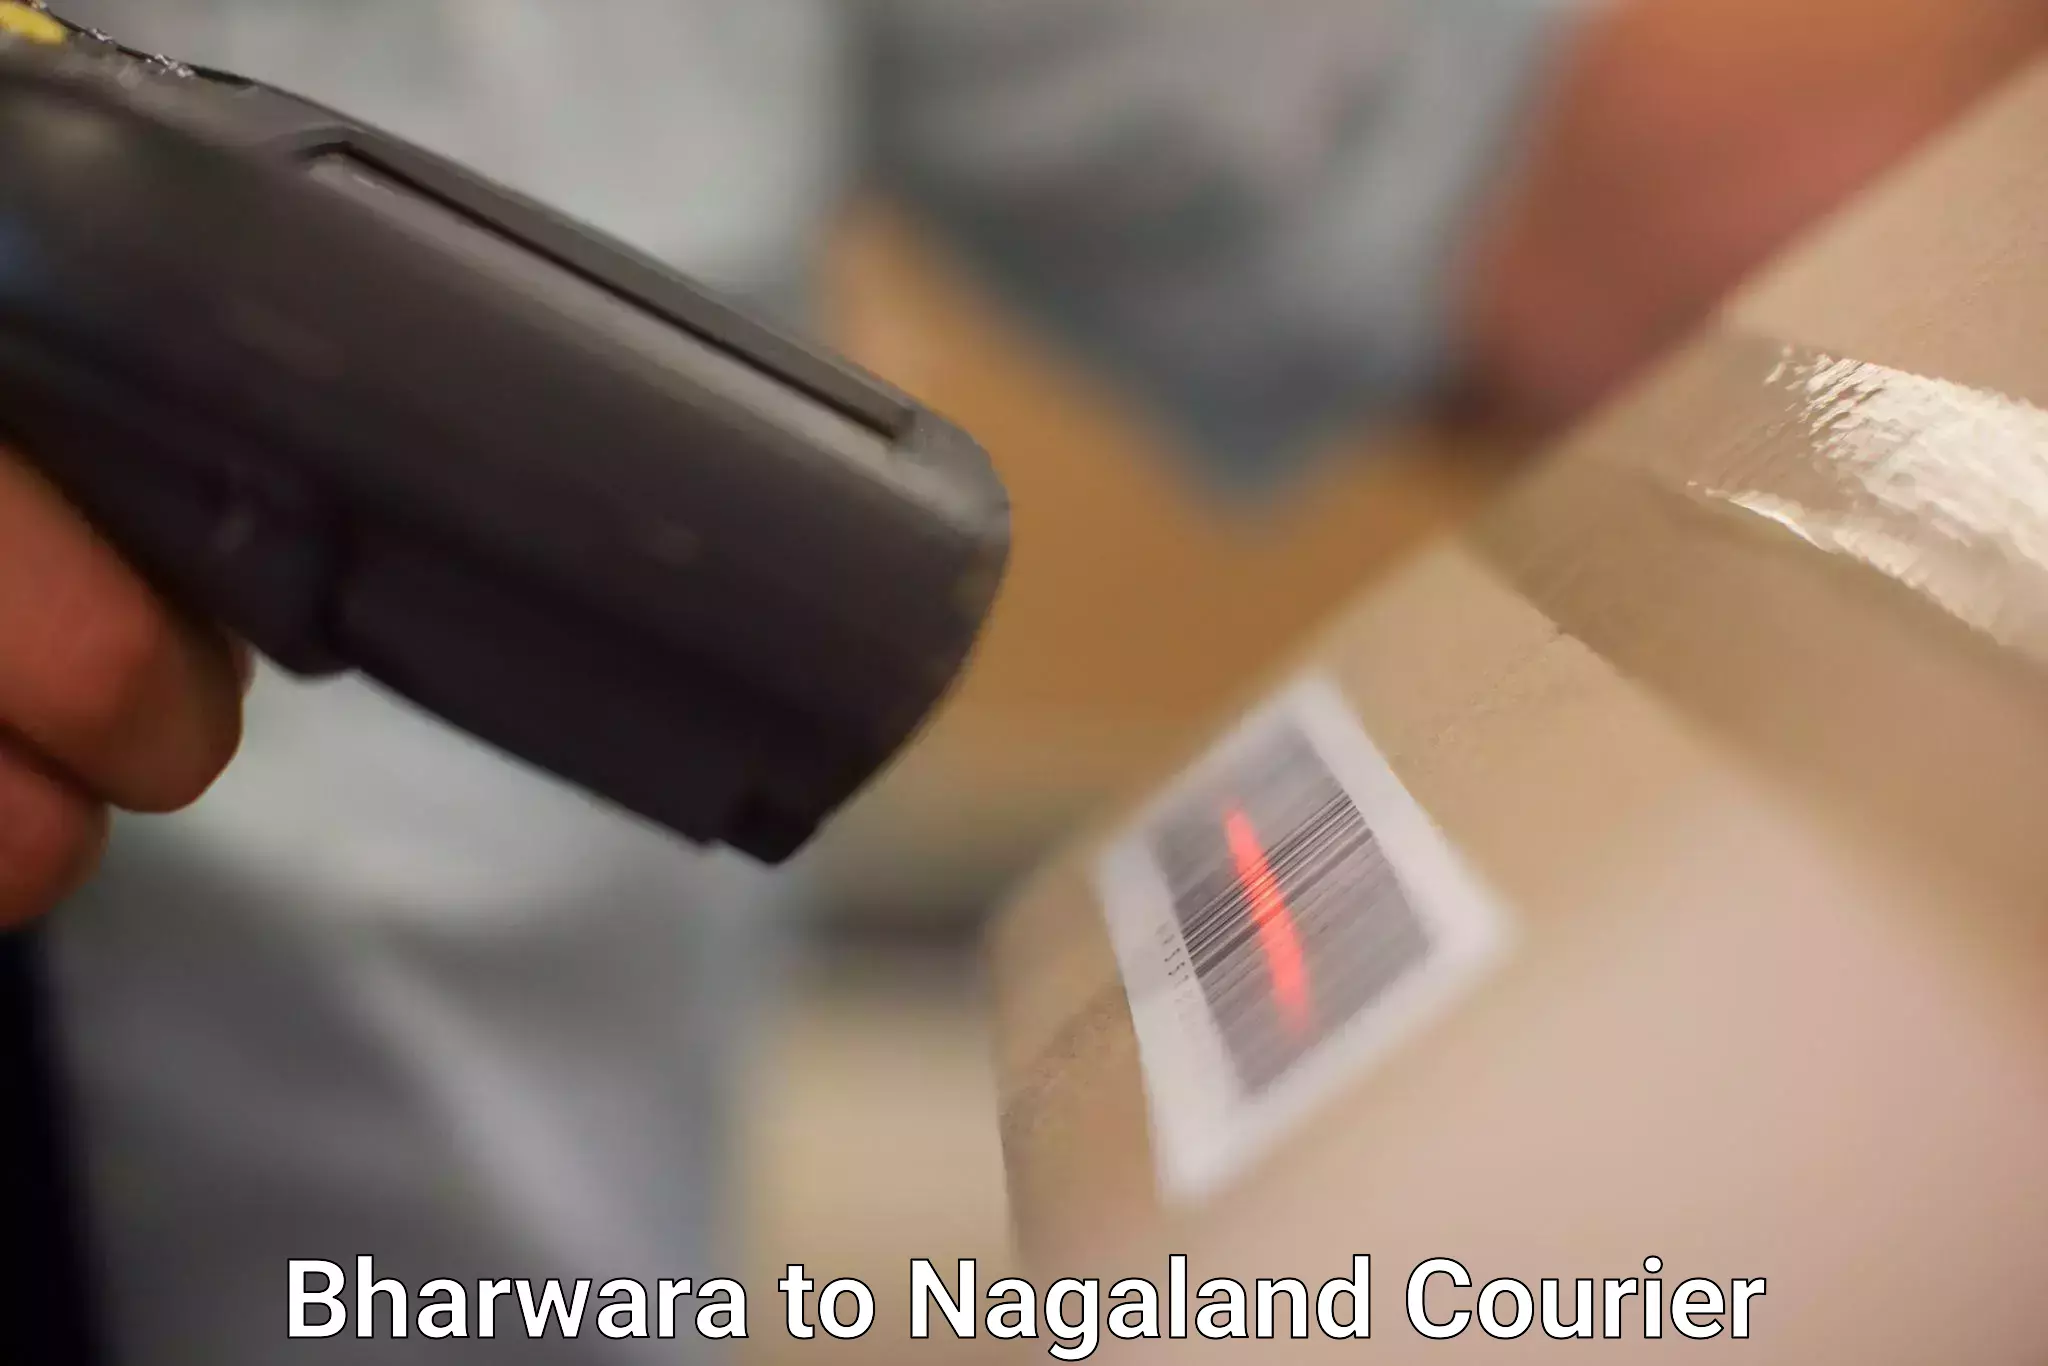 Affordable international shipping Bharwara to Nagaland